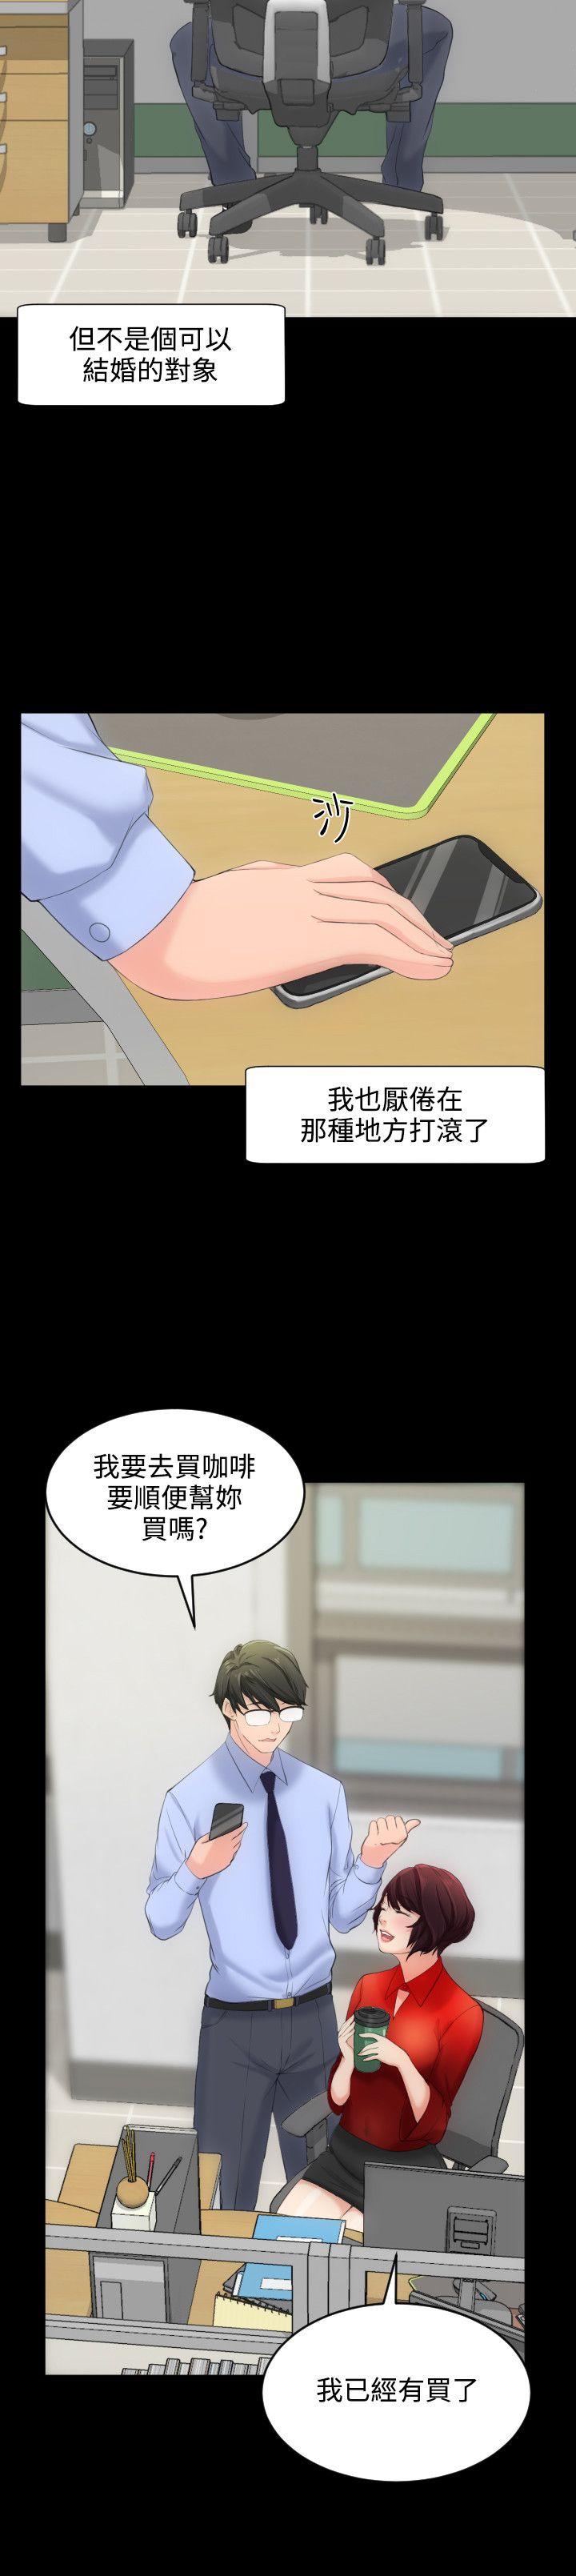 韩国污漫画 成人的滋味 第4话 20